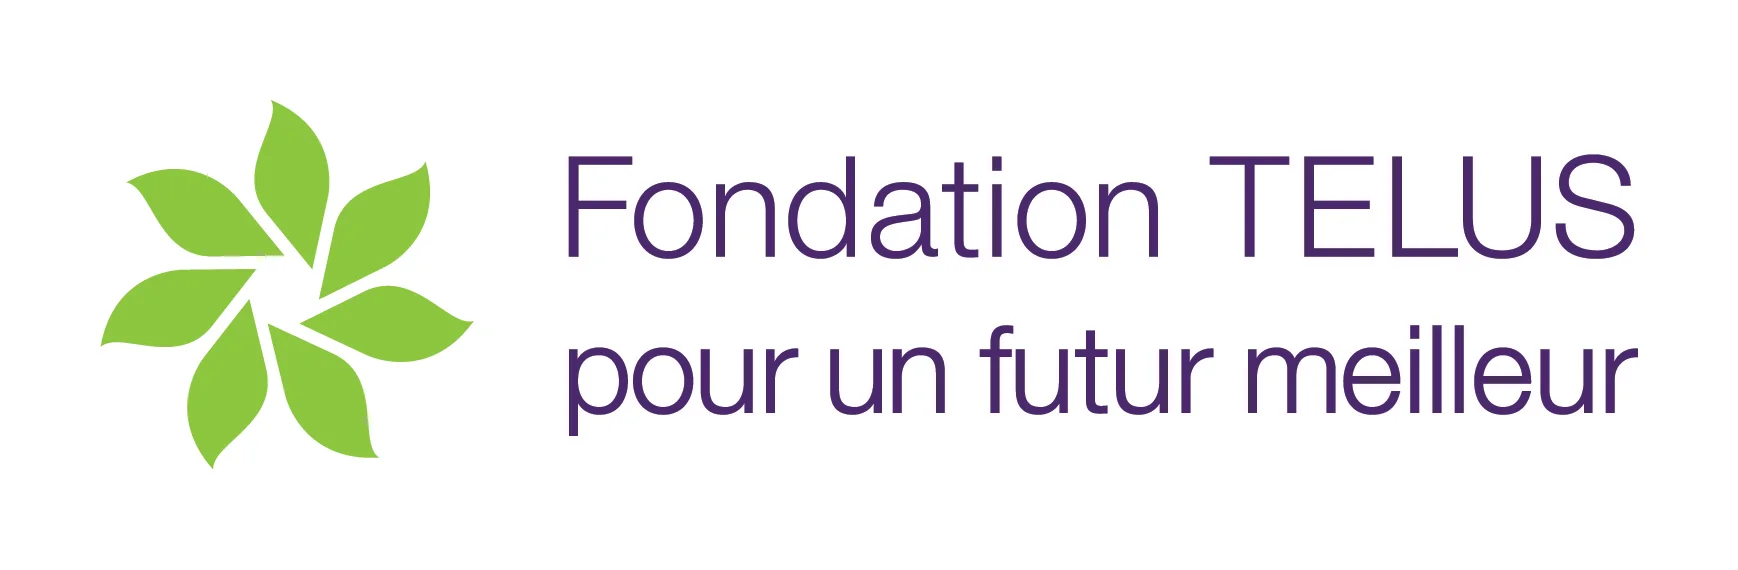 Fondation TELUS pour un futur meilleur